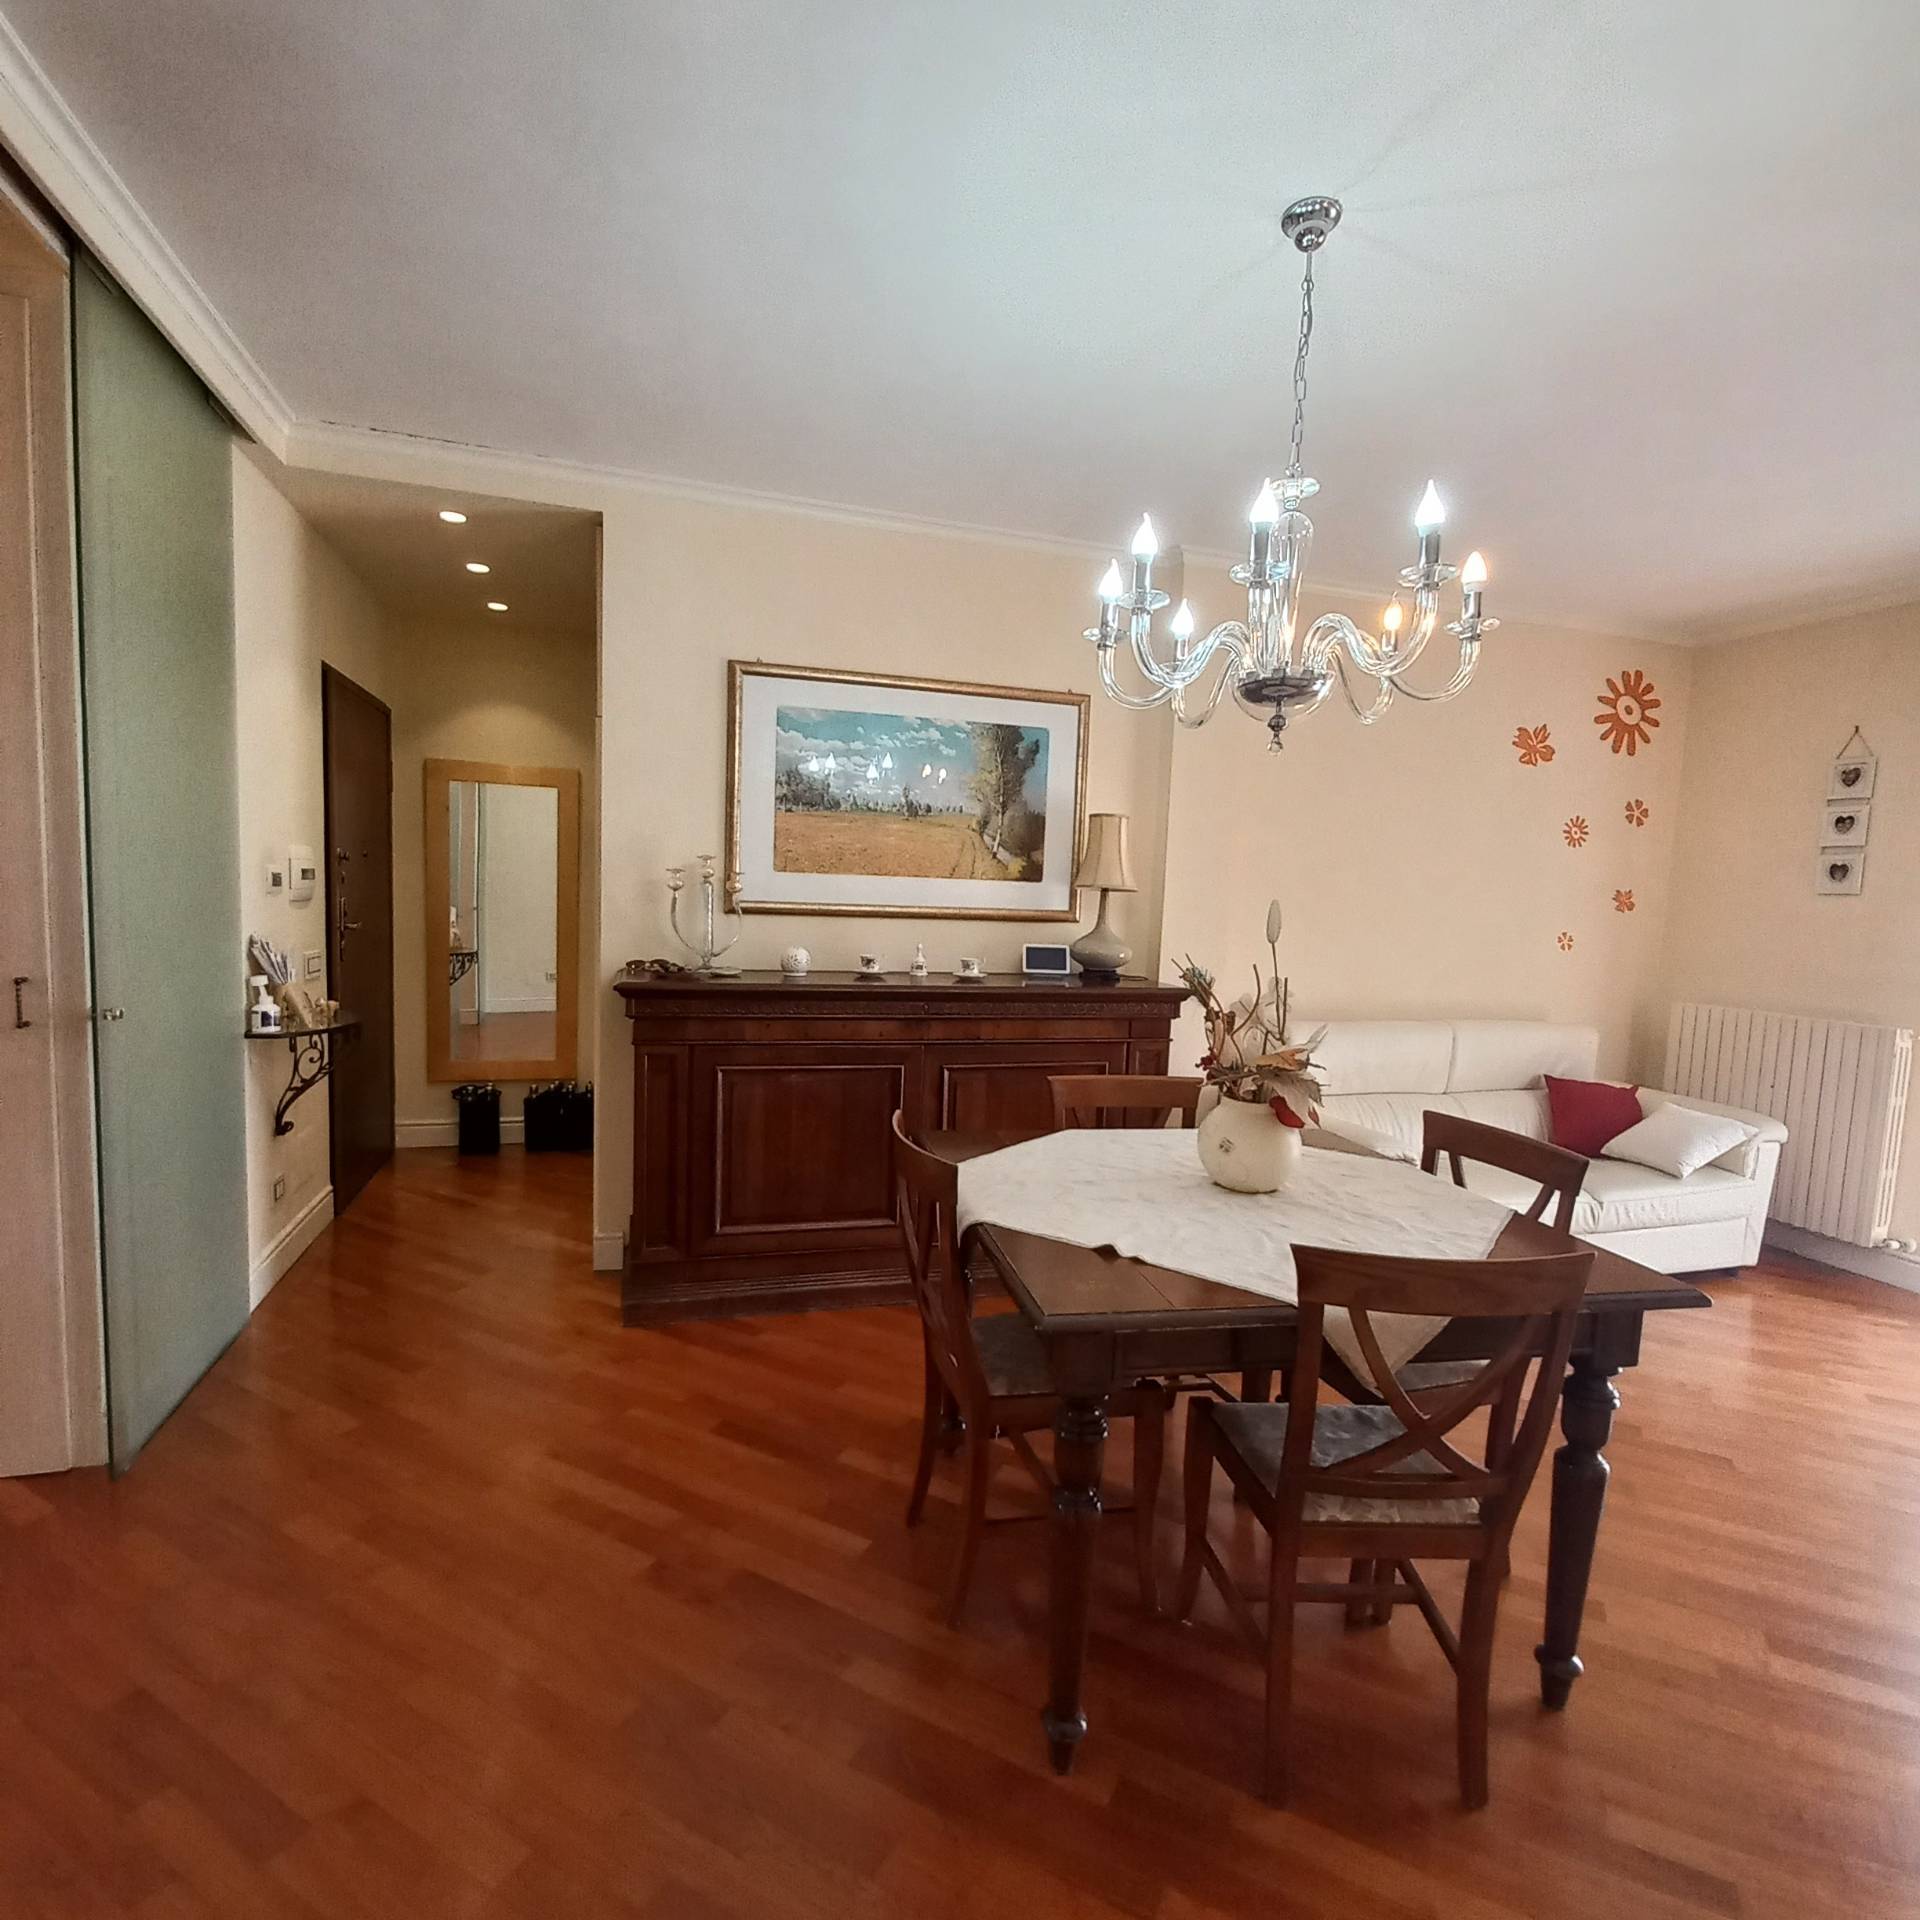 Foto - Appartamento In Vendita Servigliano (fm)